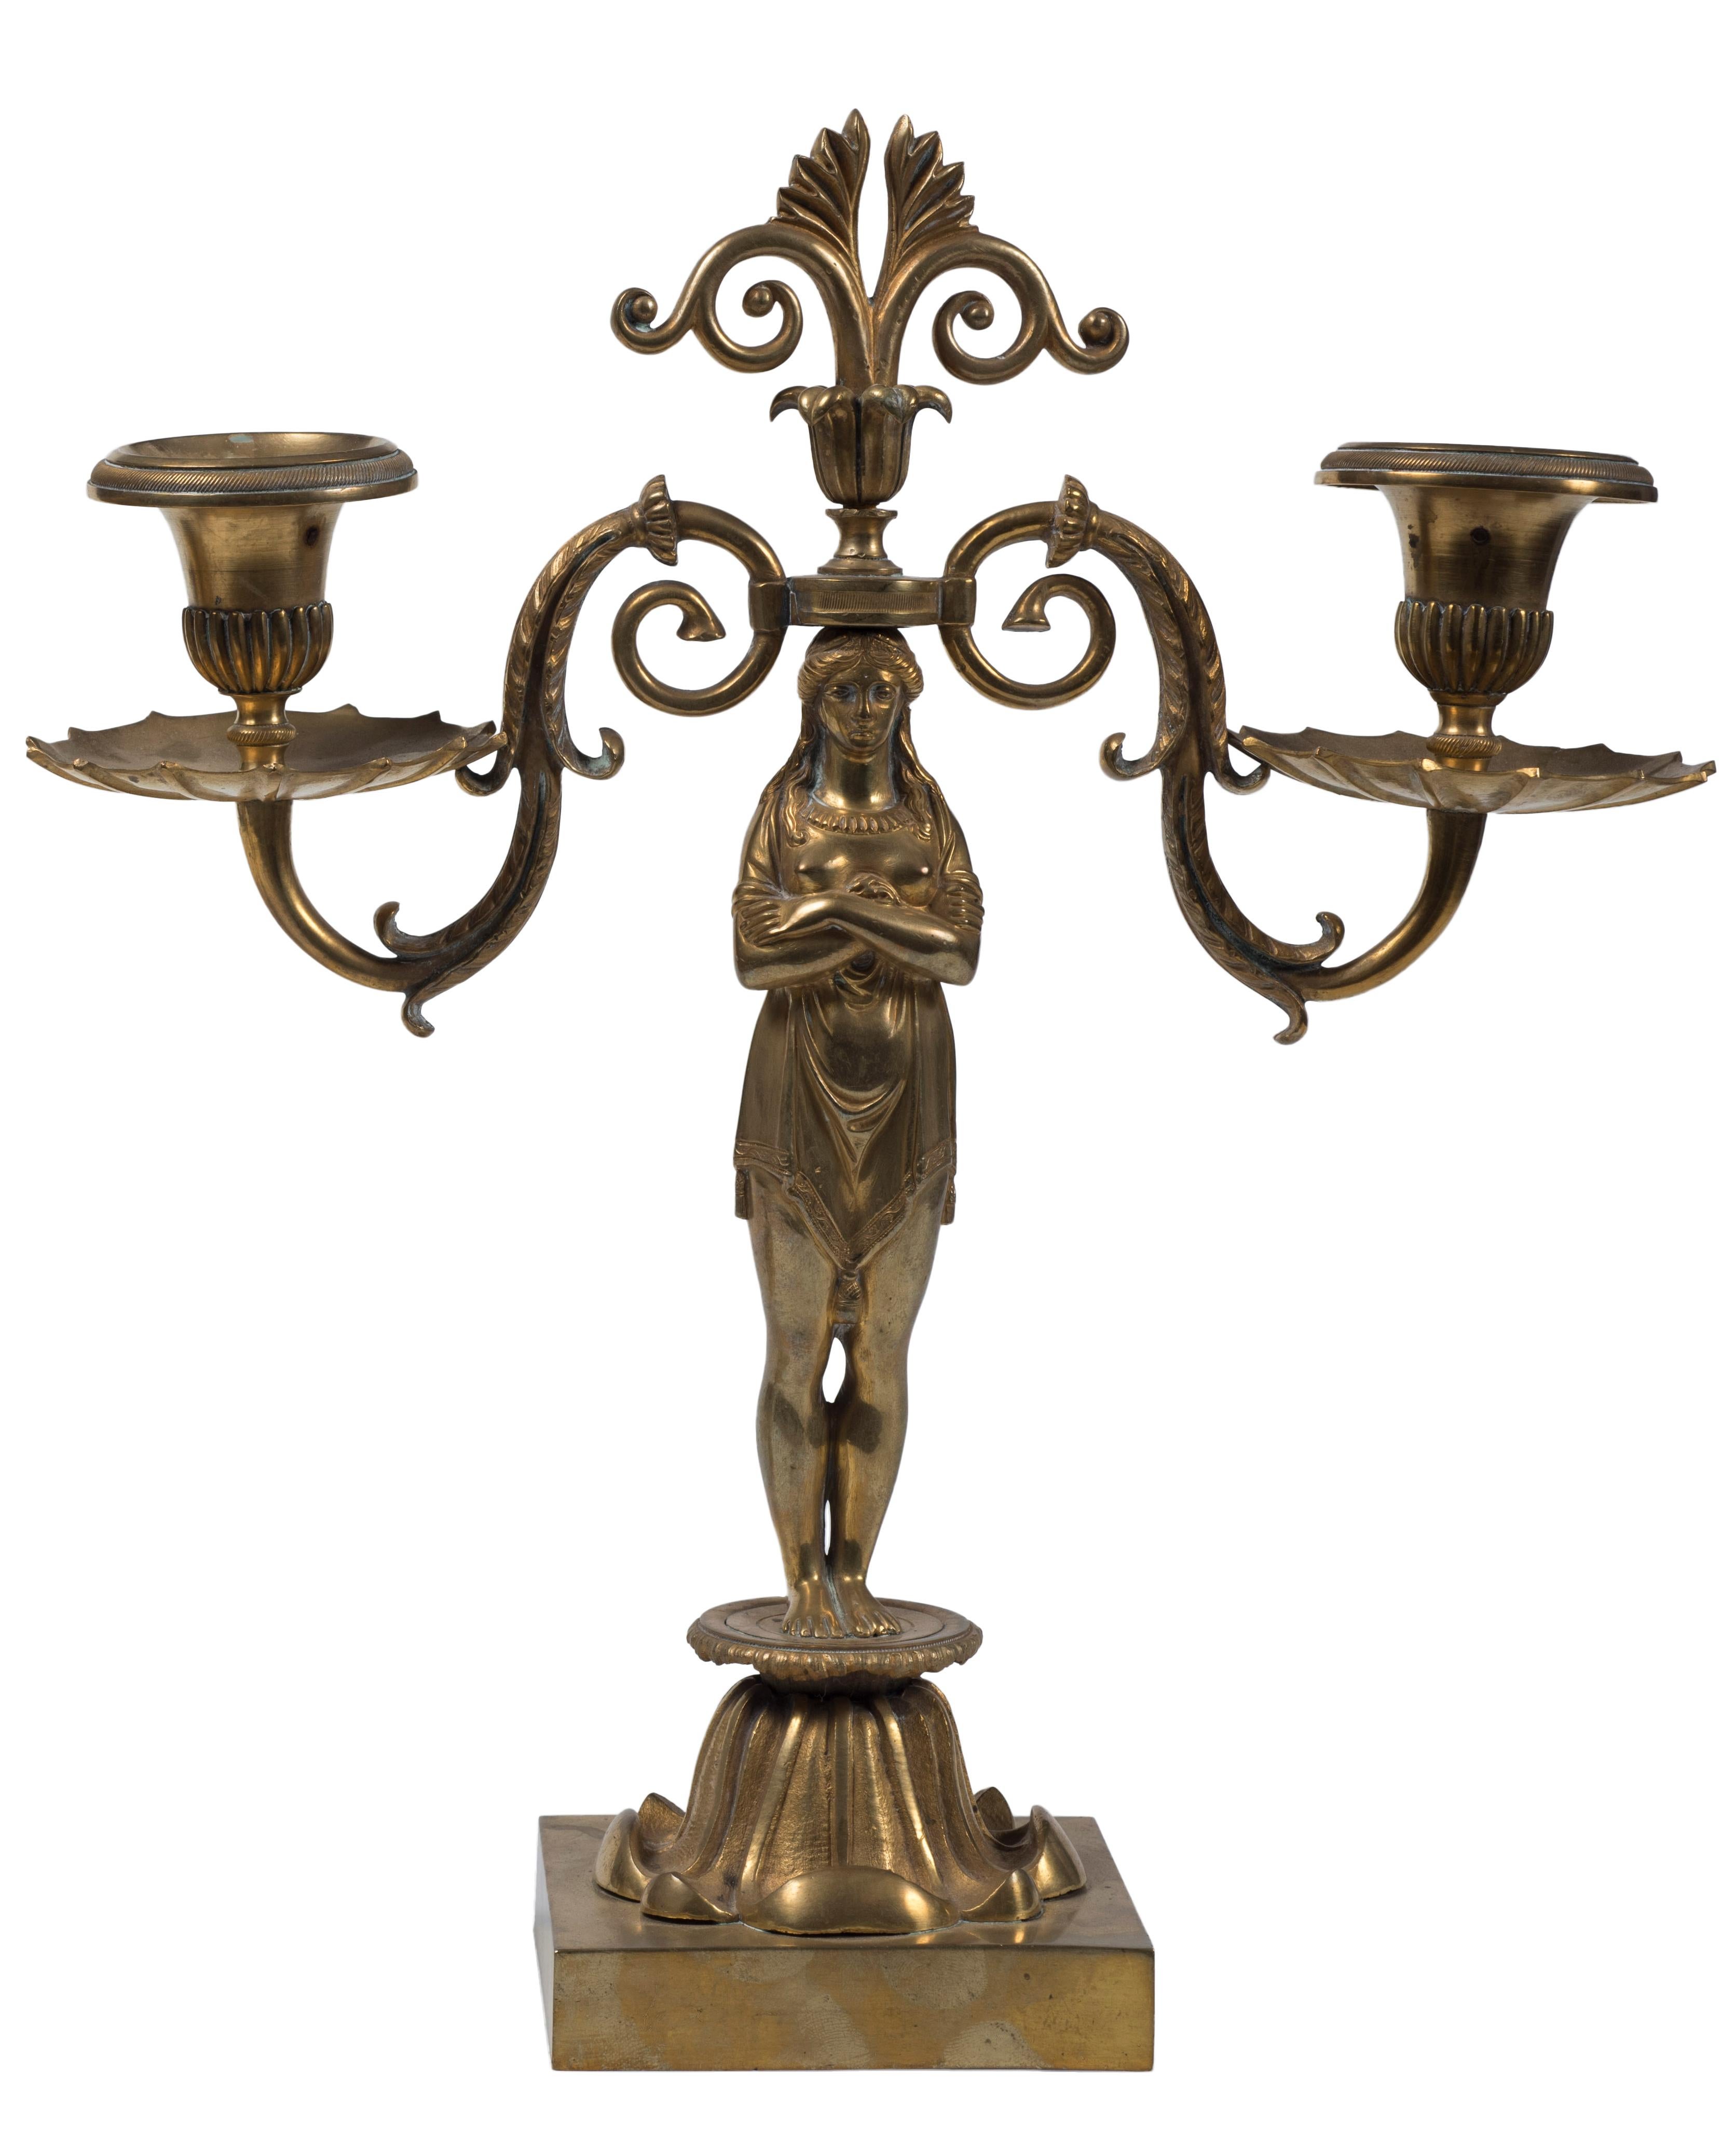 Paar Kandelaber ist ein Paar originale Kandelaber mit zwei Lichtern in Form einer weiblichen Karyatide in vergoldeter Bronze.
Realisiert von einem anonymen Künstler in Frankreich, in der zweiten Hälfte des 20.

Gute Bedingungen.